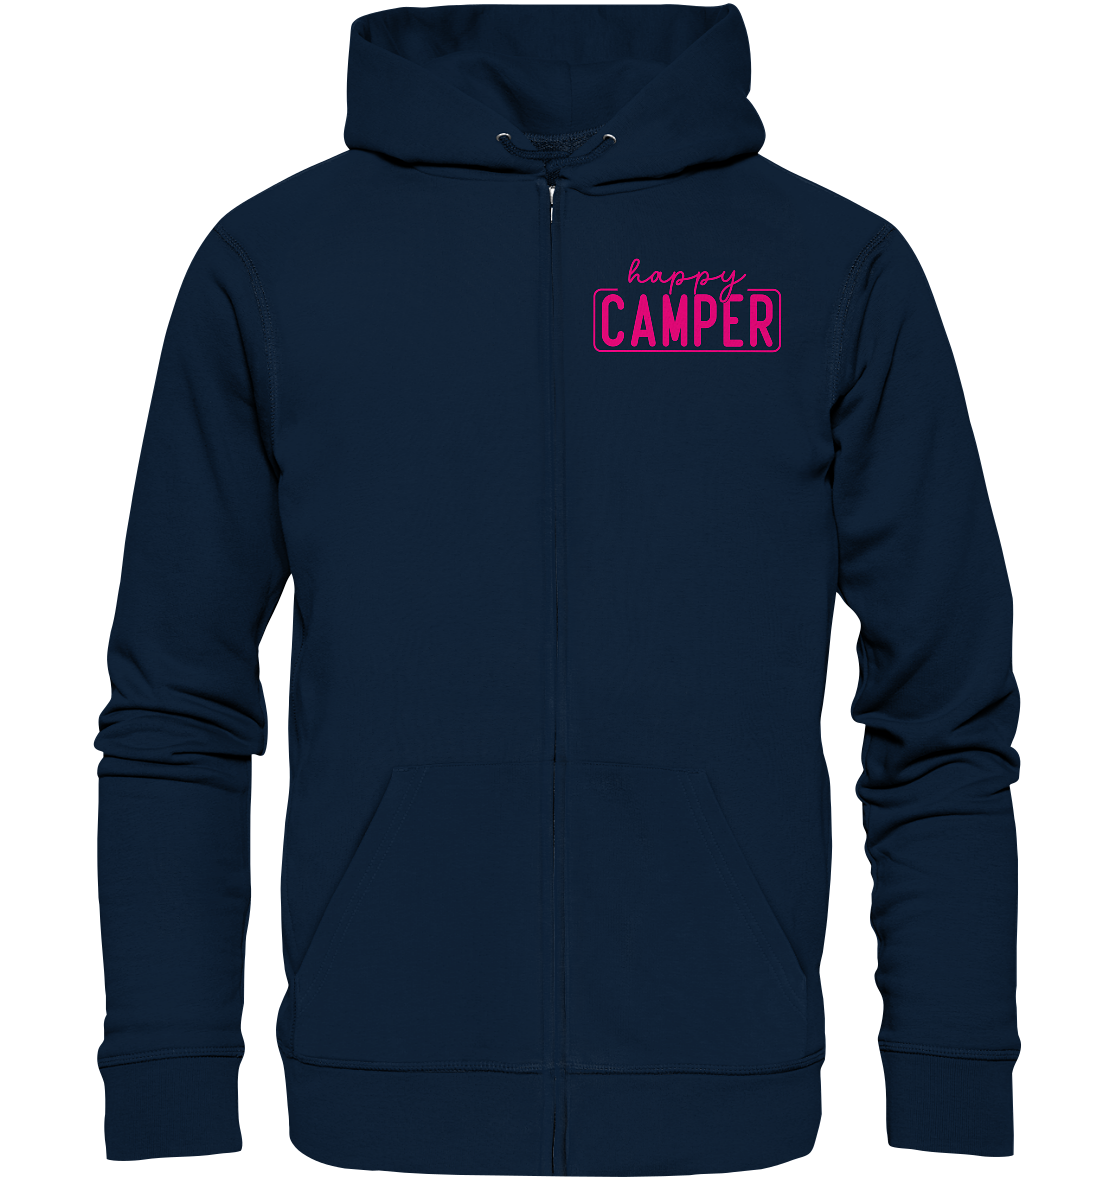 happy_camper - Organic Zipper